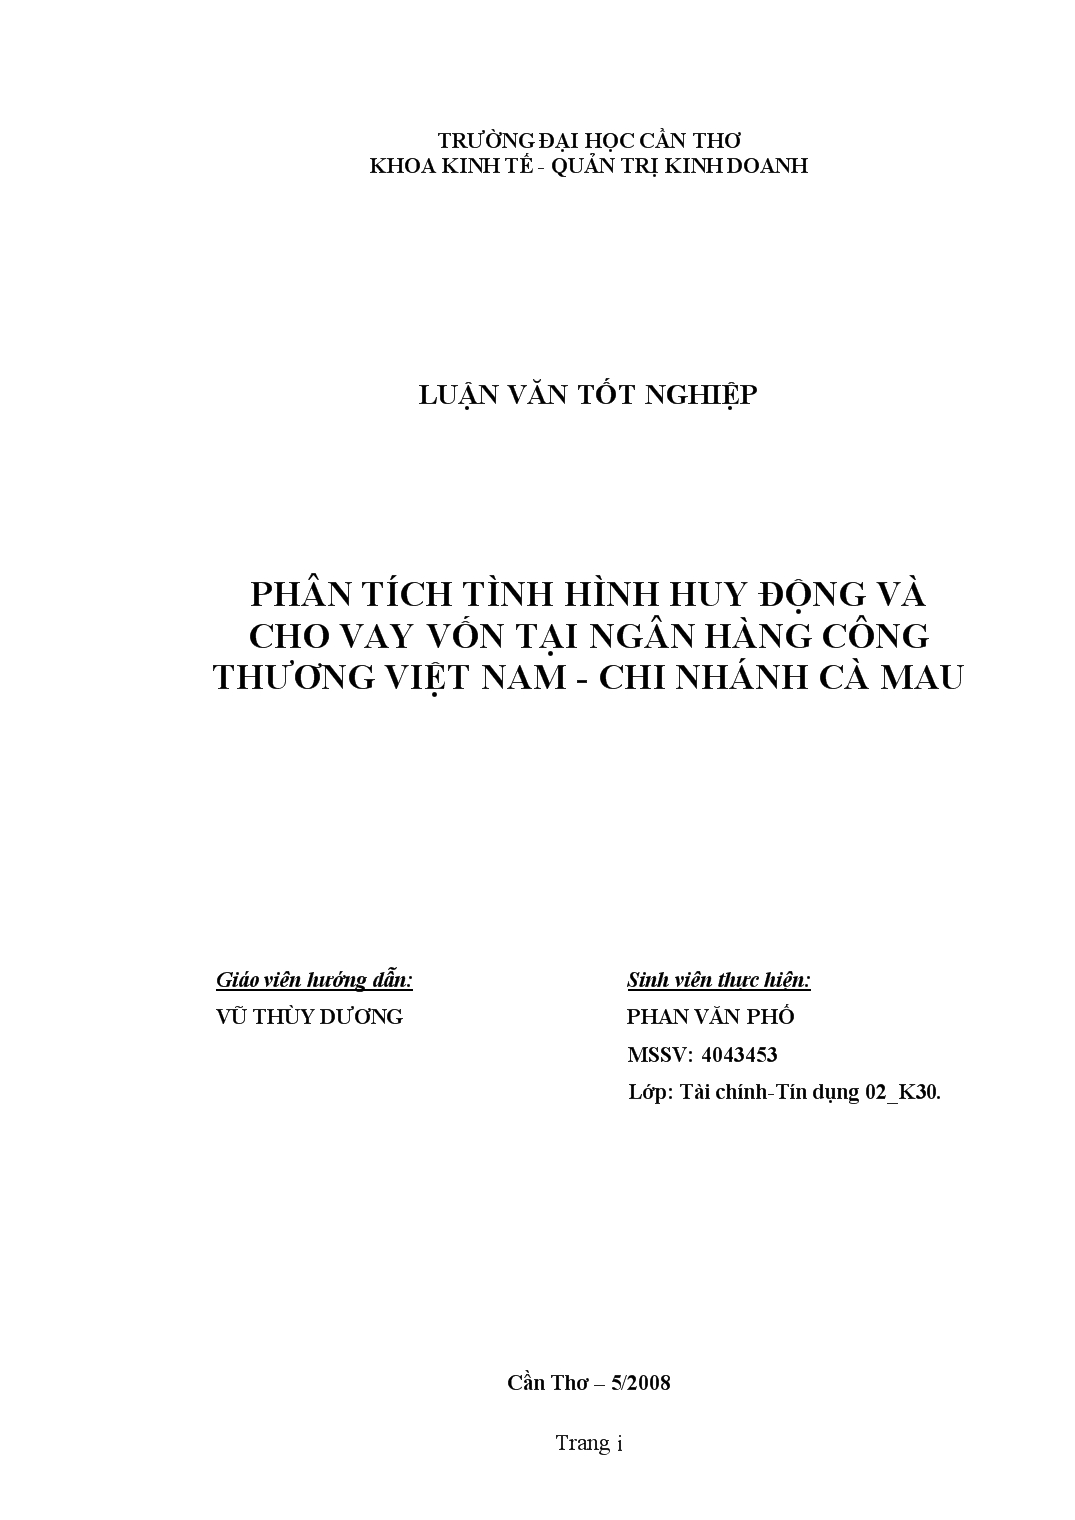 Luận văn Phân tích tình hình huy động và cho vay vốn tại ngân hàng công thương Việt Nam chi nhánh Cà Mau trang 1